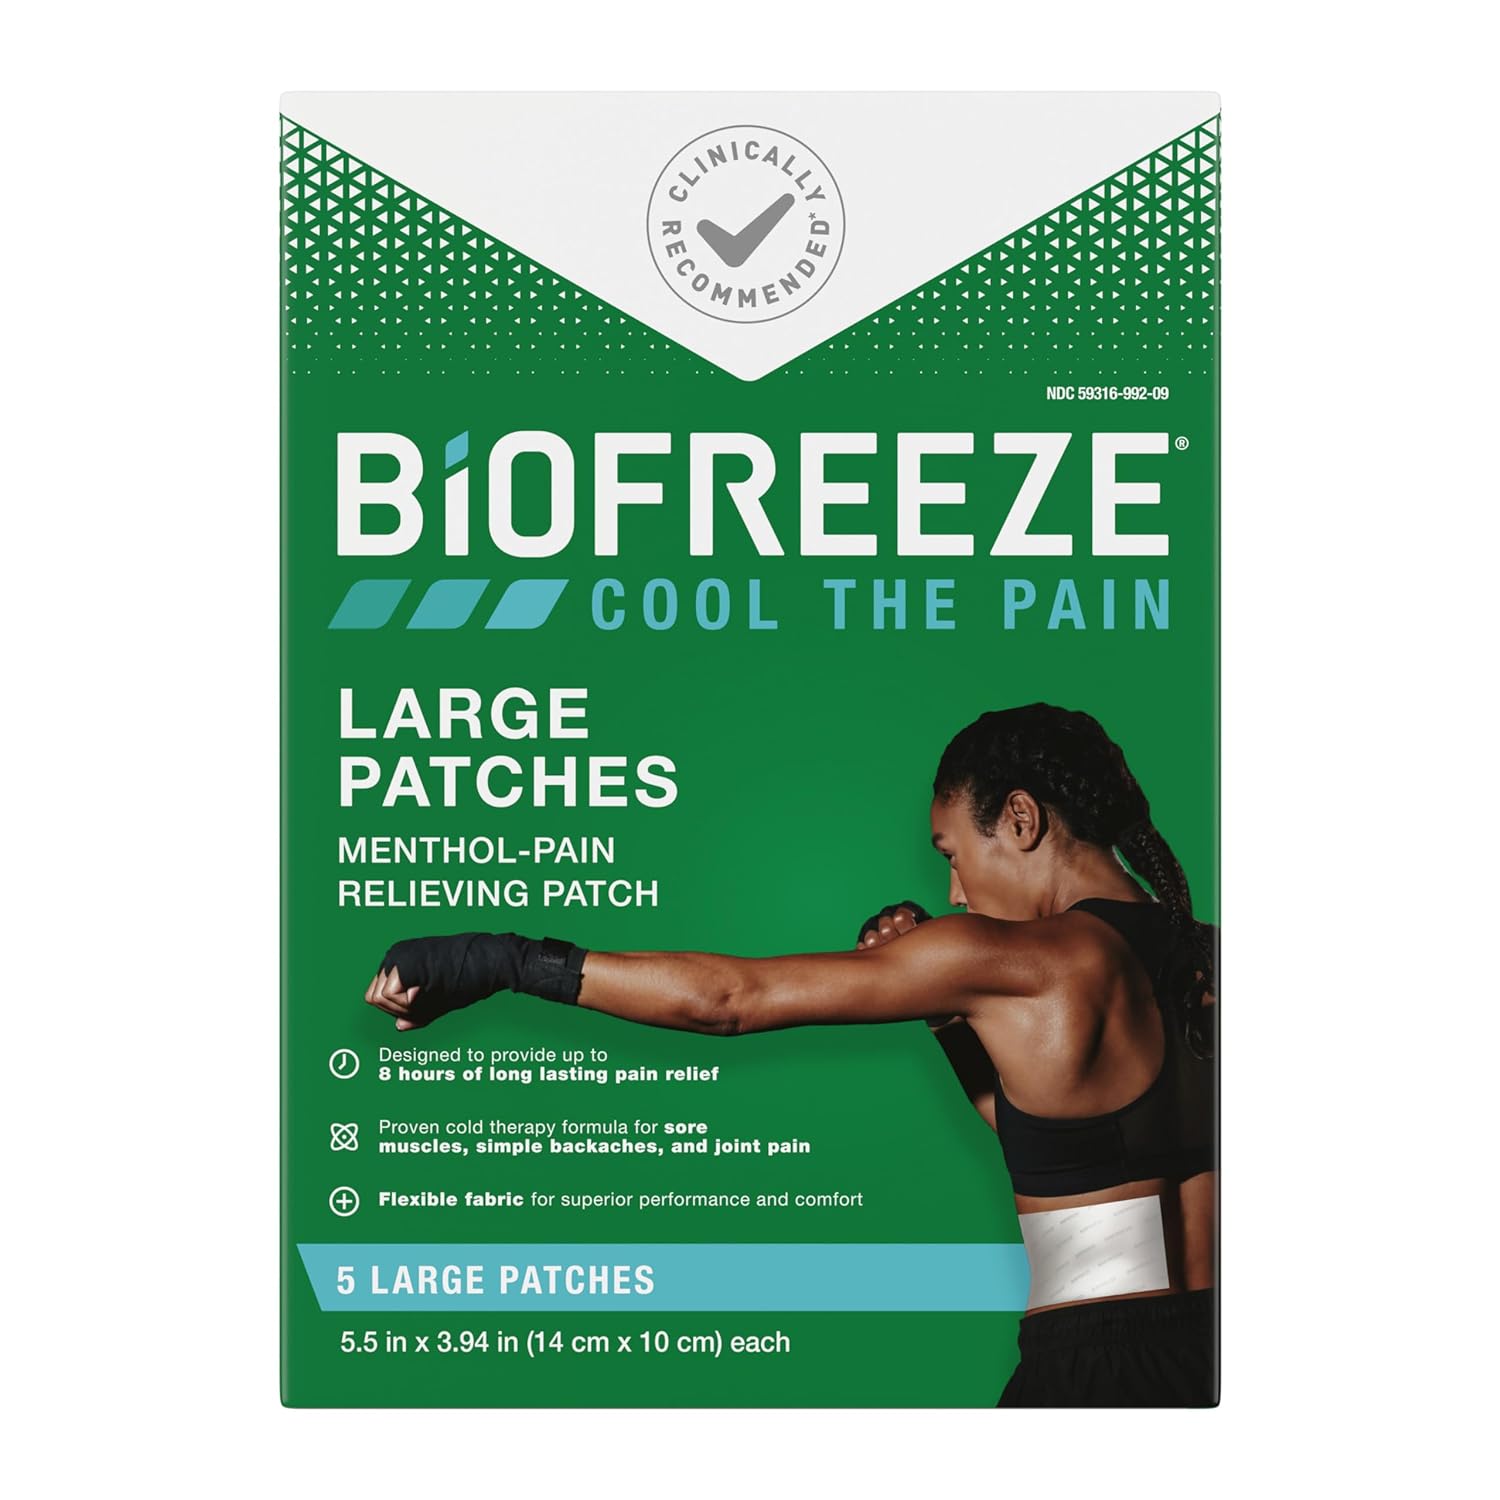 biofreeze gel packets